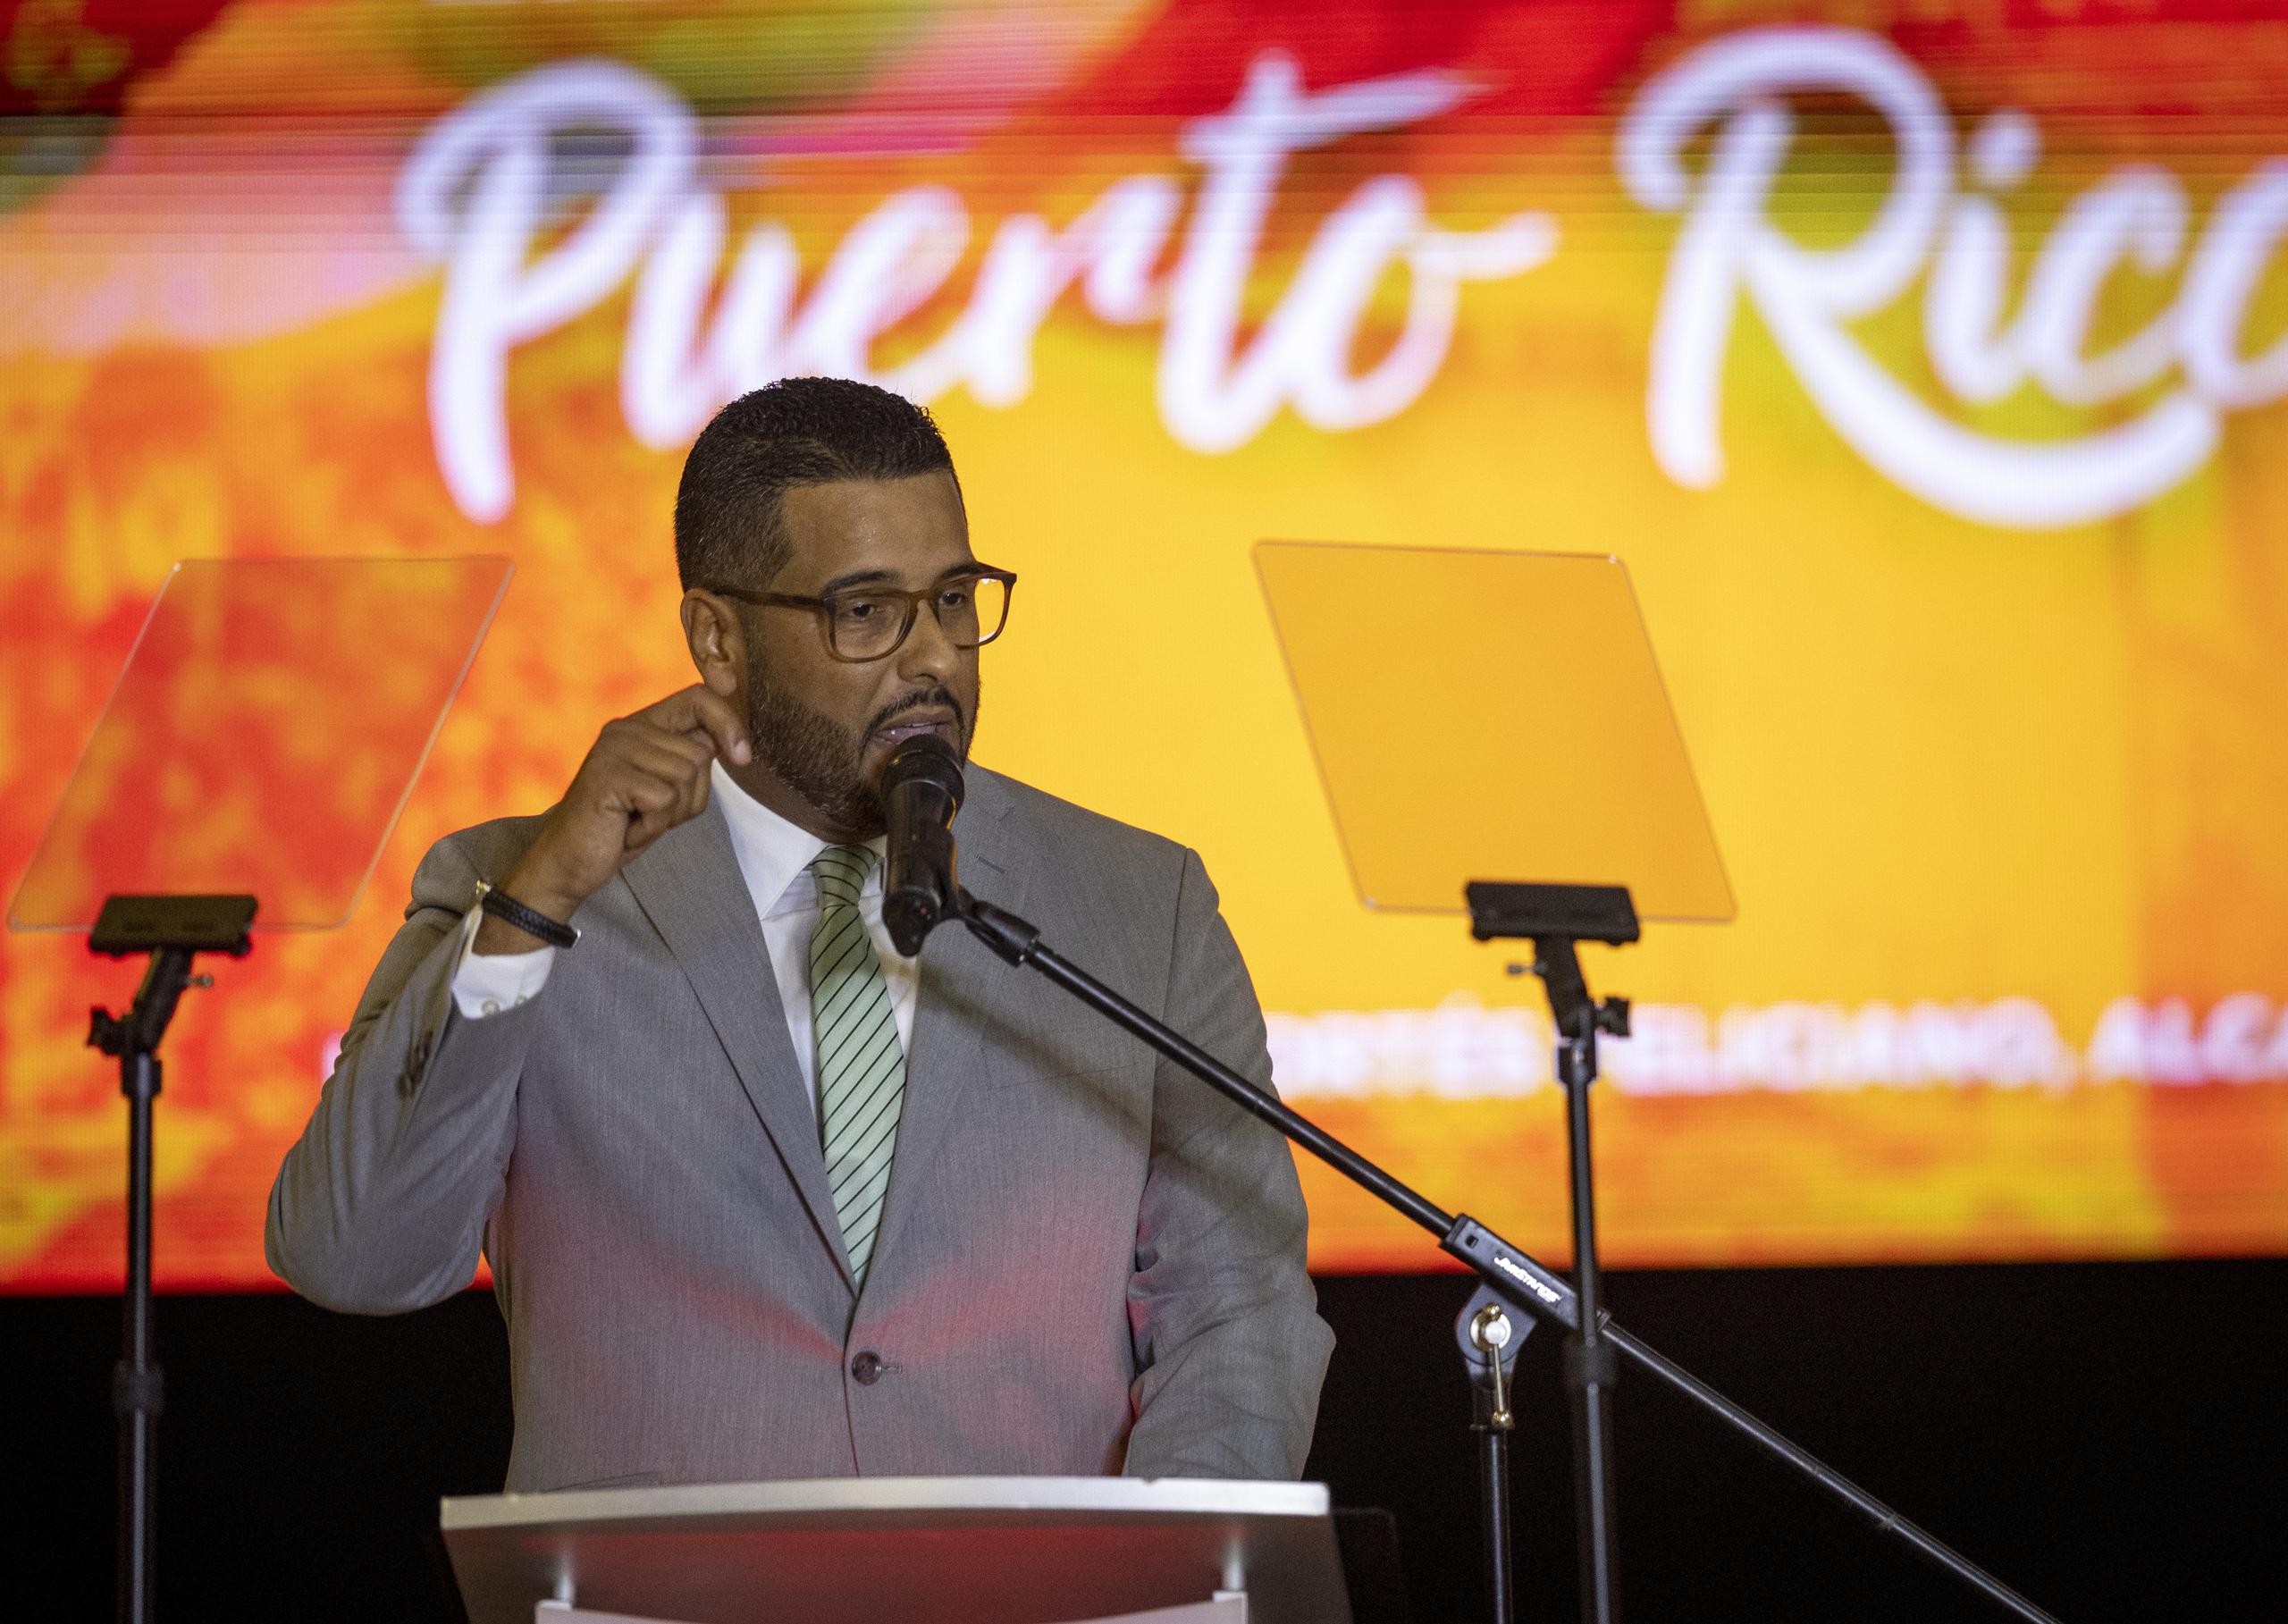 Ortiz culminó su alocución con un llamado la juventud puertorriqueña, que necesita un país para poder “vivir una vida plena en su patria” y que, en cambio, “les dicen que la salvación está en otra parte y su única opción es marcharse”.